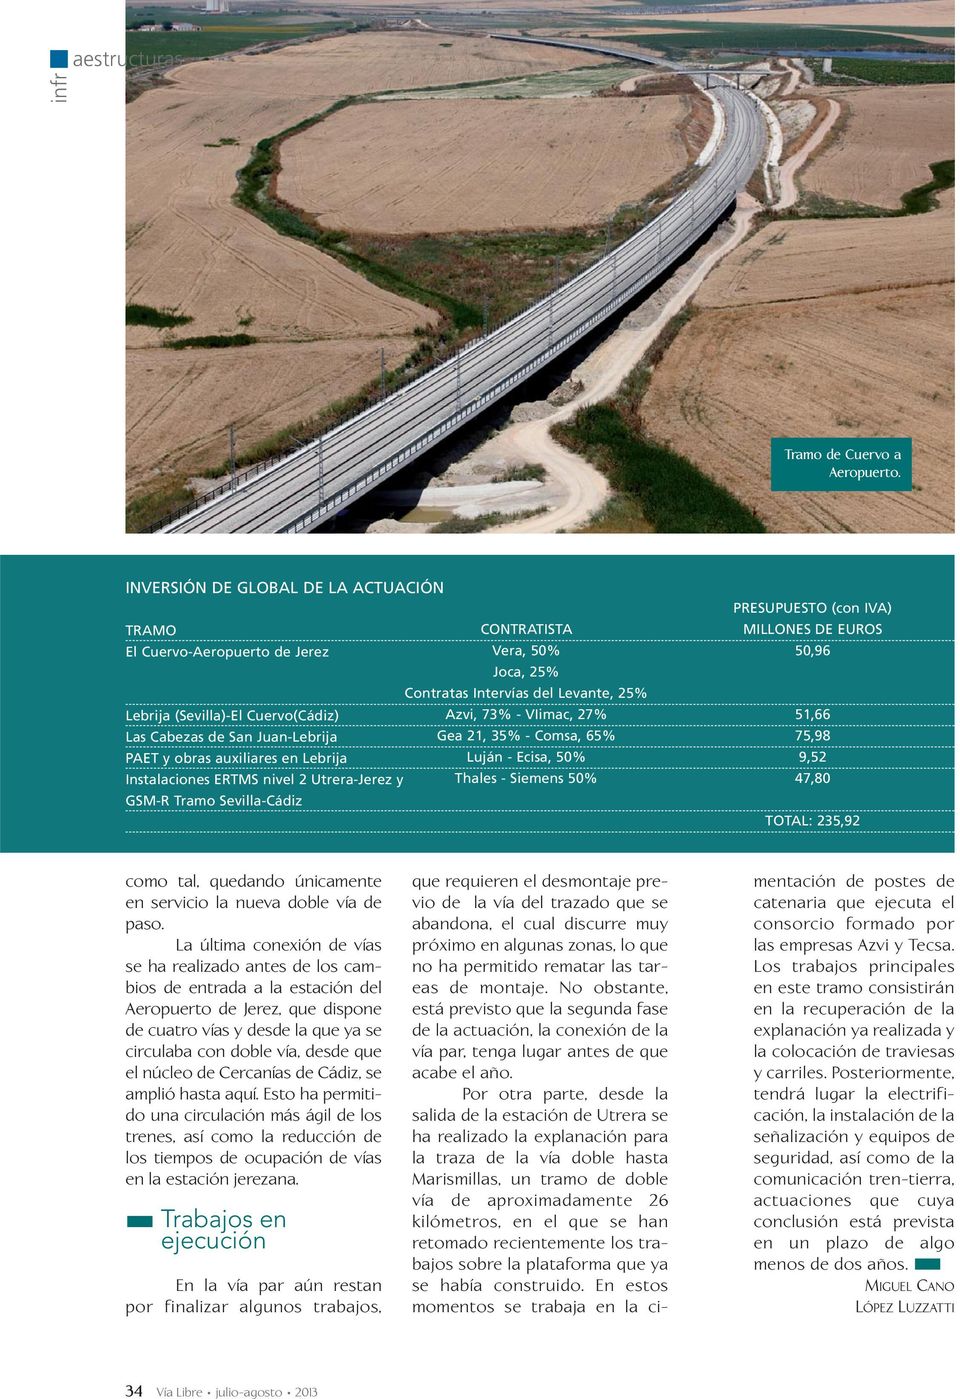 Las Cabezas de San Juan-Lebrija Gea 21, 35% - Comsa, 65% PAET y obras auxiliares en Lebrija Luján - Ecisa, 50% Instalaciones ERTMS nivel 2 Utrera-Jerez y Thales - Siemens 50% GSM-R Tramo